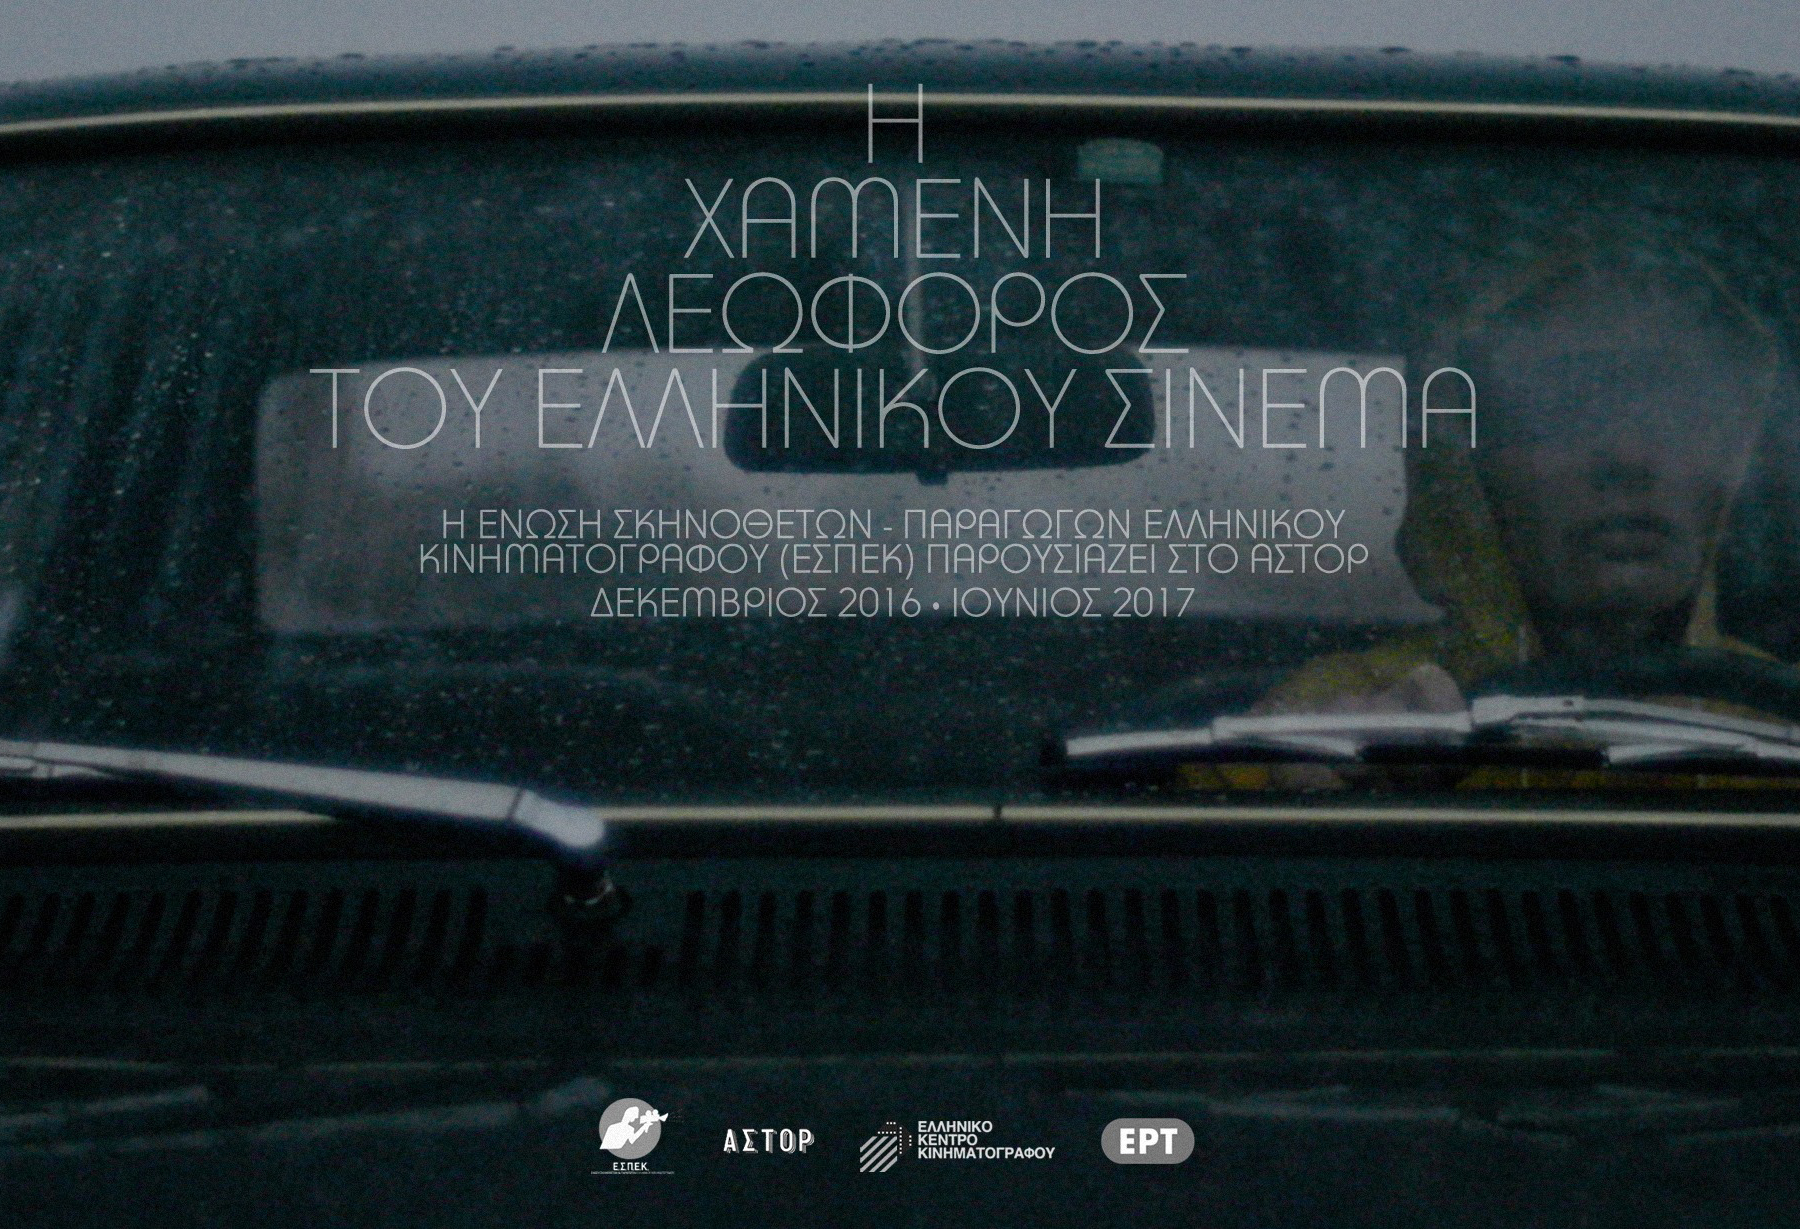 Η χαμένη λεωφόρος του ελληνικού σινεμά